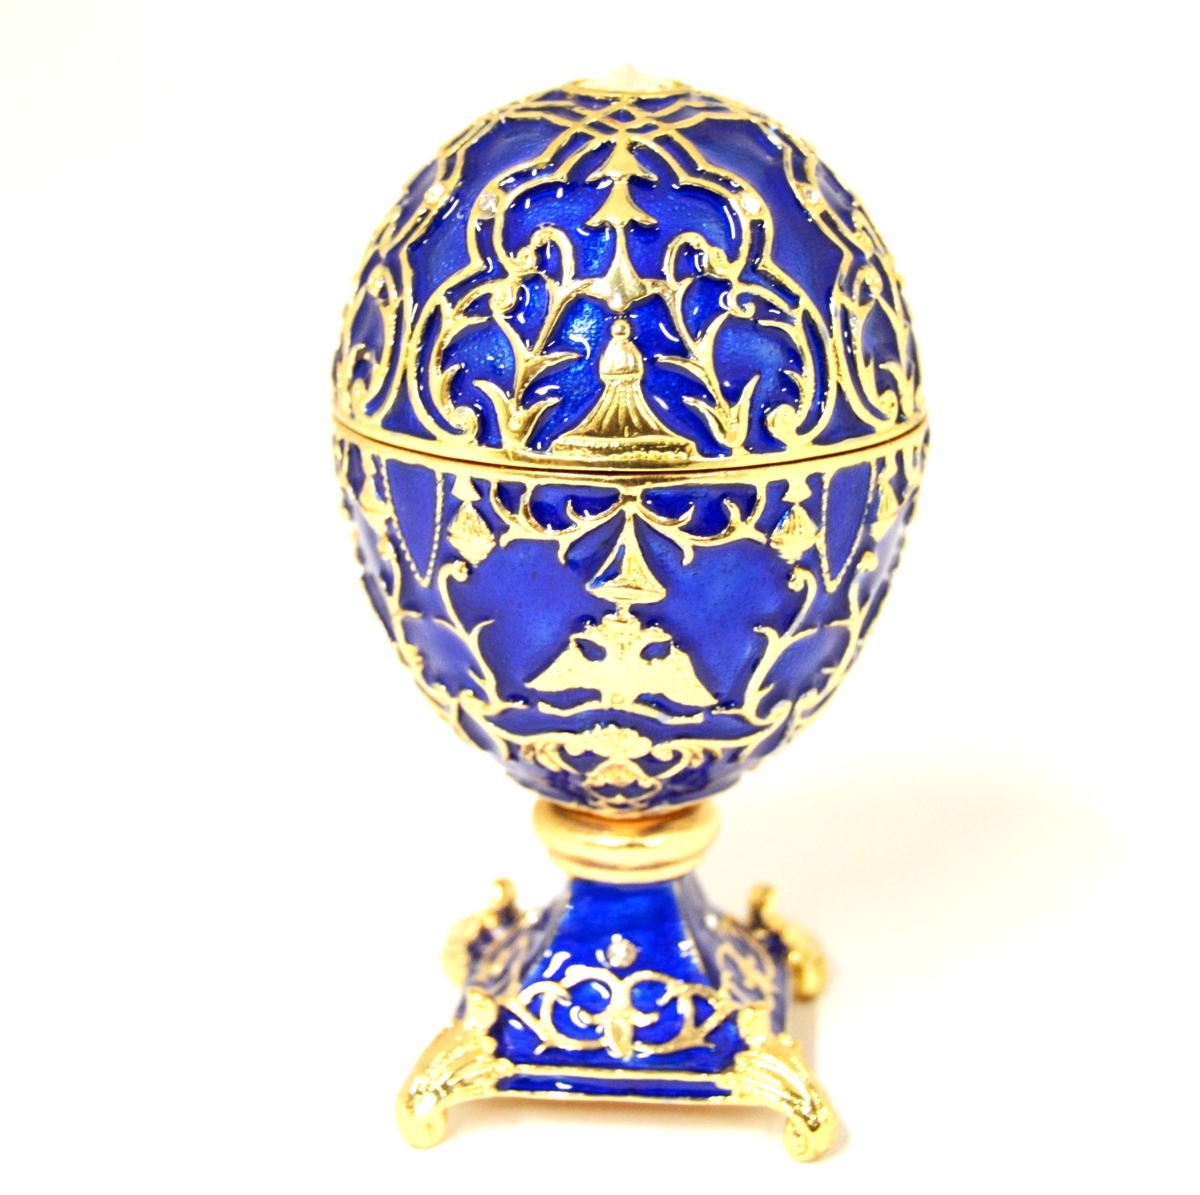 1131505a Faberge Design Egg Gold Plating Trinket Box - Swarovski Crystals & Enamel